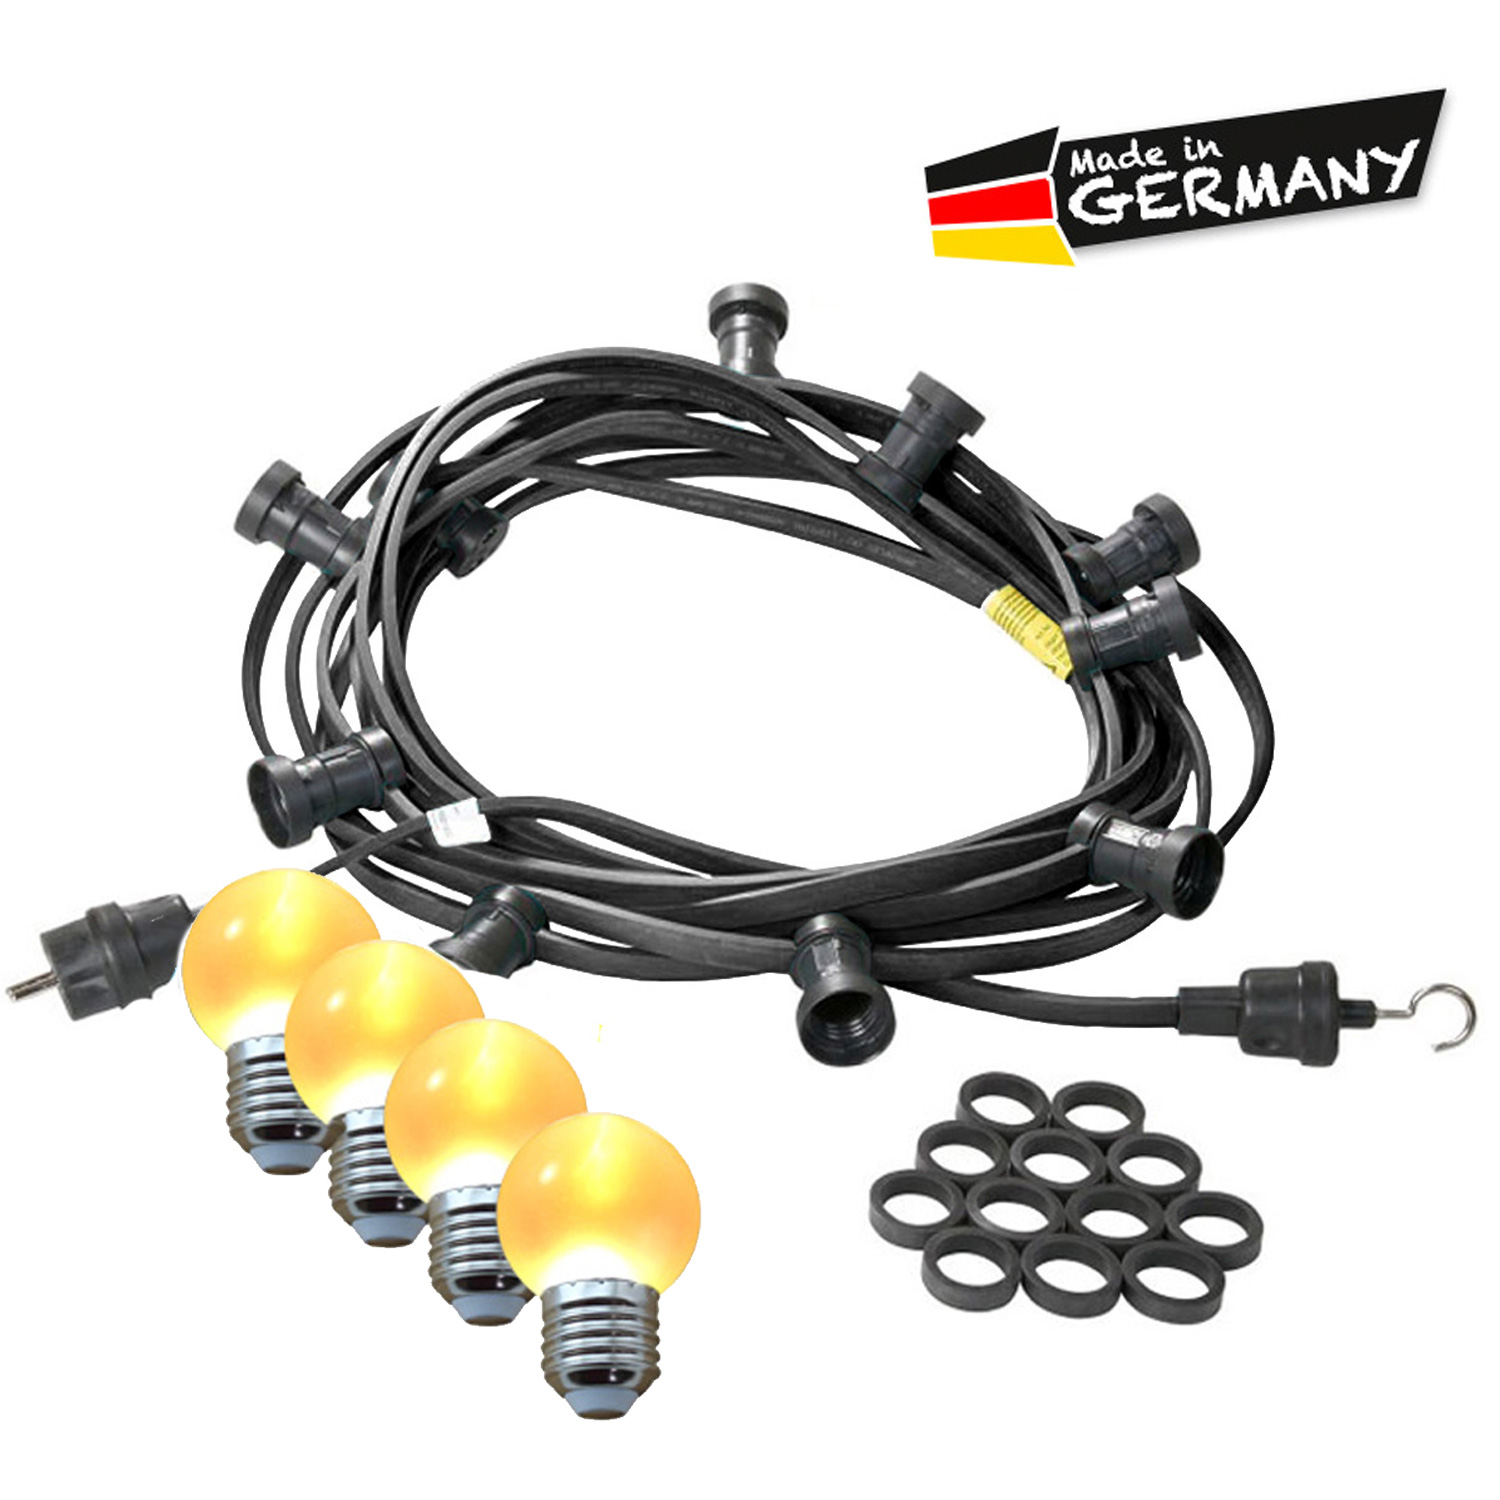 Illu-/Partylichterkette 10m - Außenlichterkette - Made in Germany - 20 ultra-warmweiße LED Kugeln